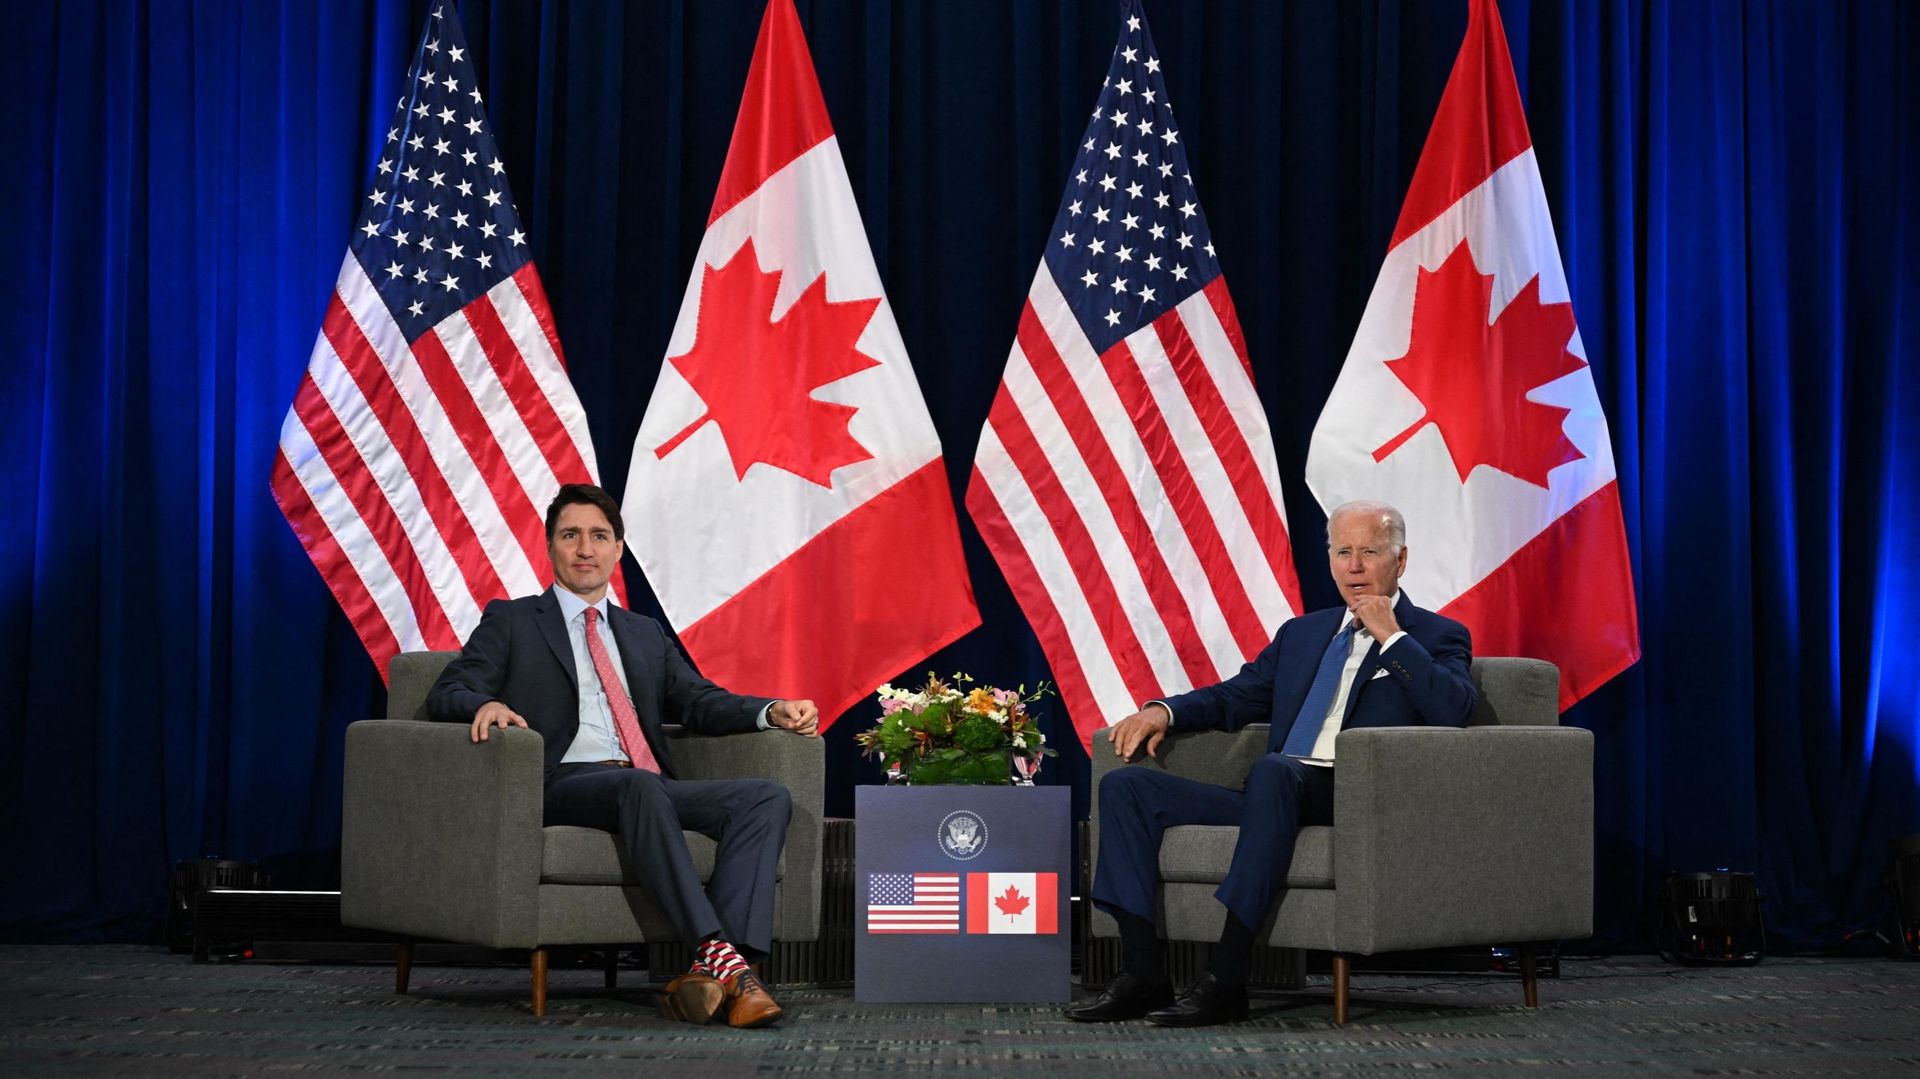 Le président américain Joe Biden et le Premier ministre canadien Justin Trudeau Lors du sommet des Amériques à Los Angeles, le 9 juin 2022. Jim WATSON / AFP